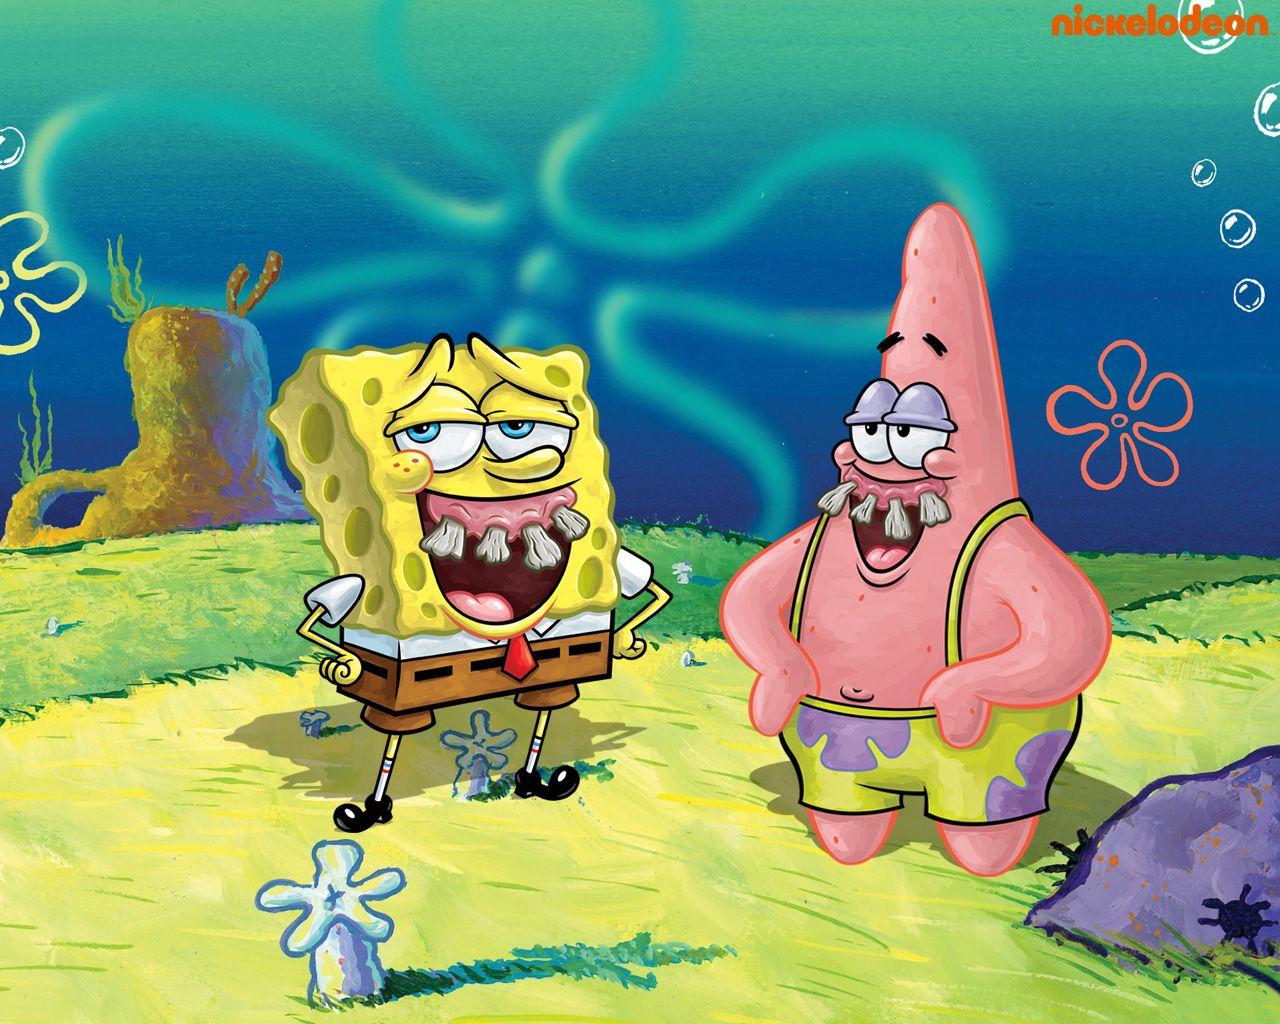 Spongebob & Patrick Squarepants Wallpaper. BG Wallpaper